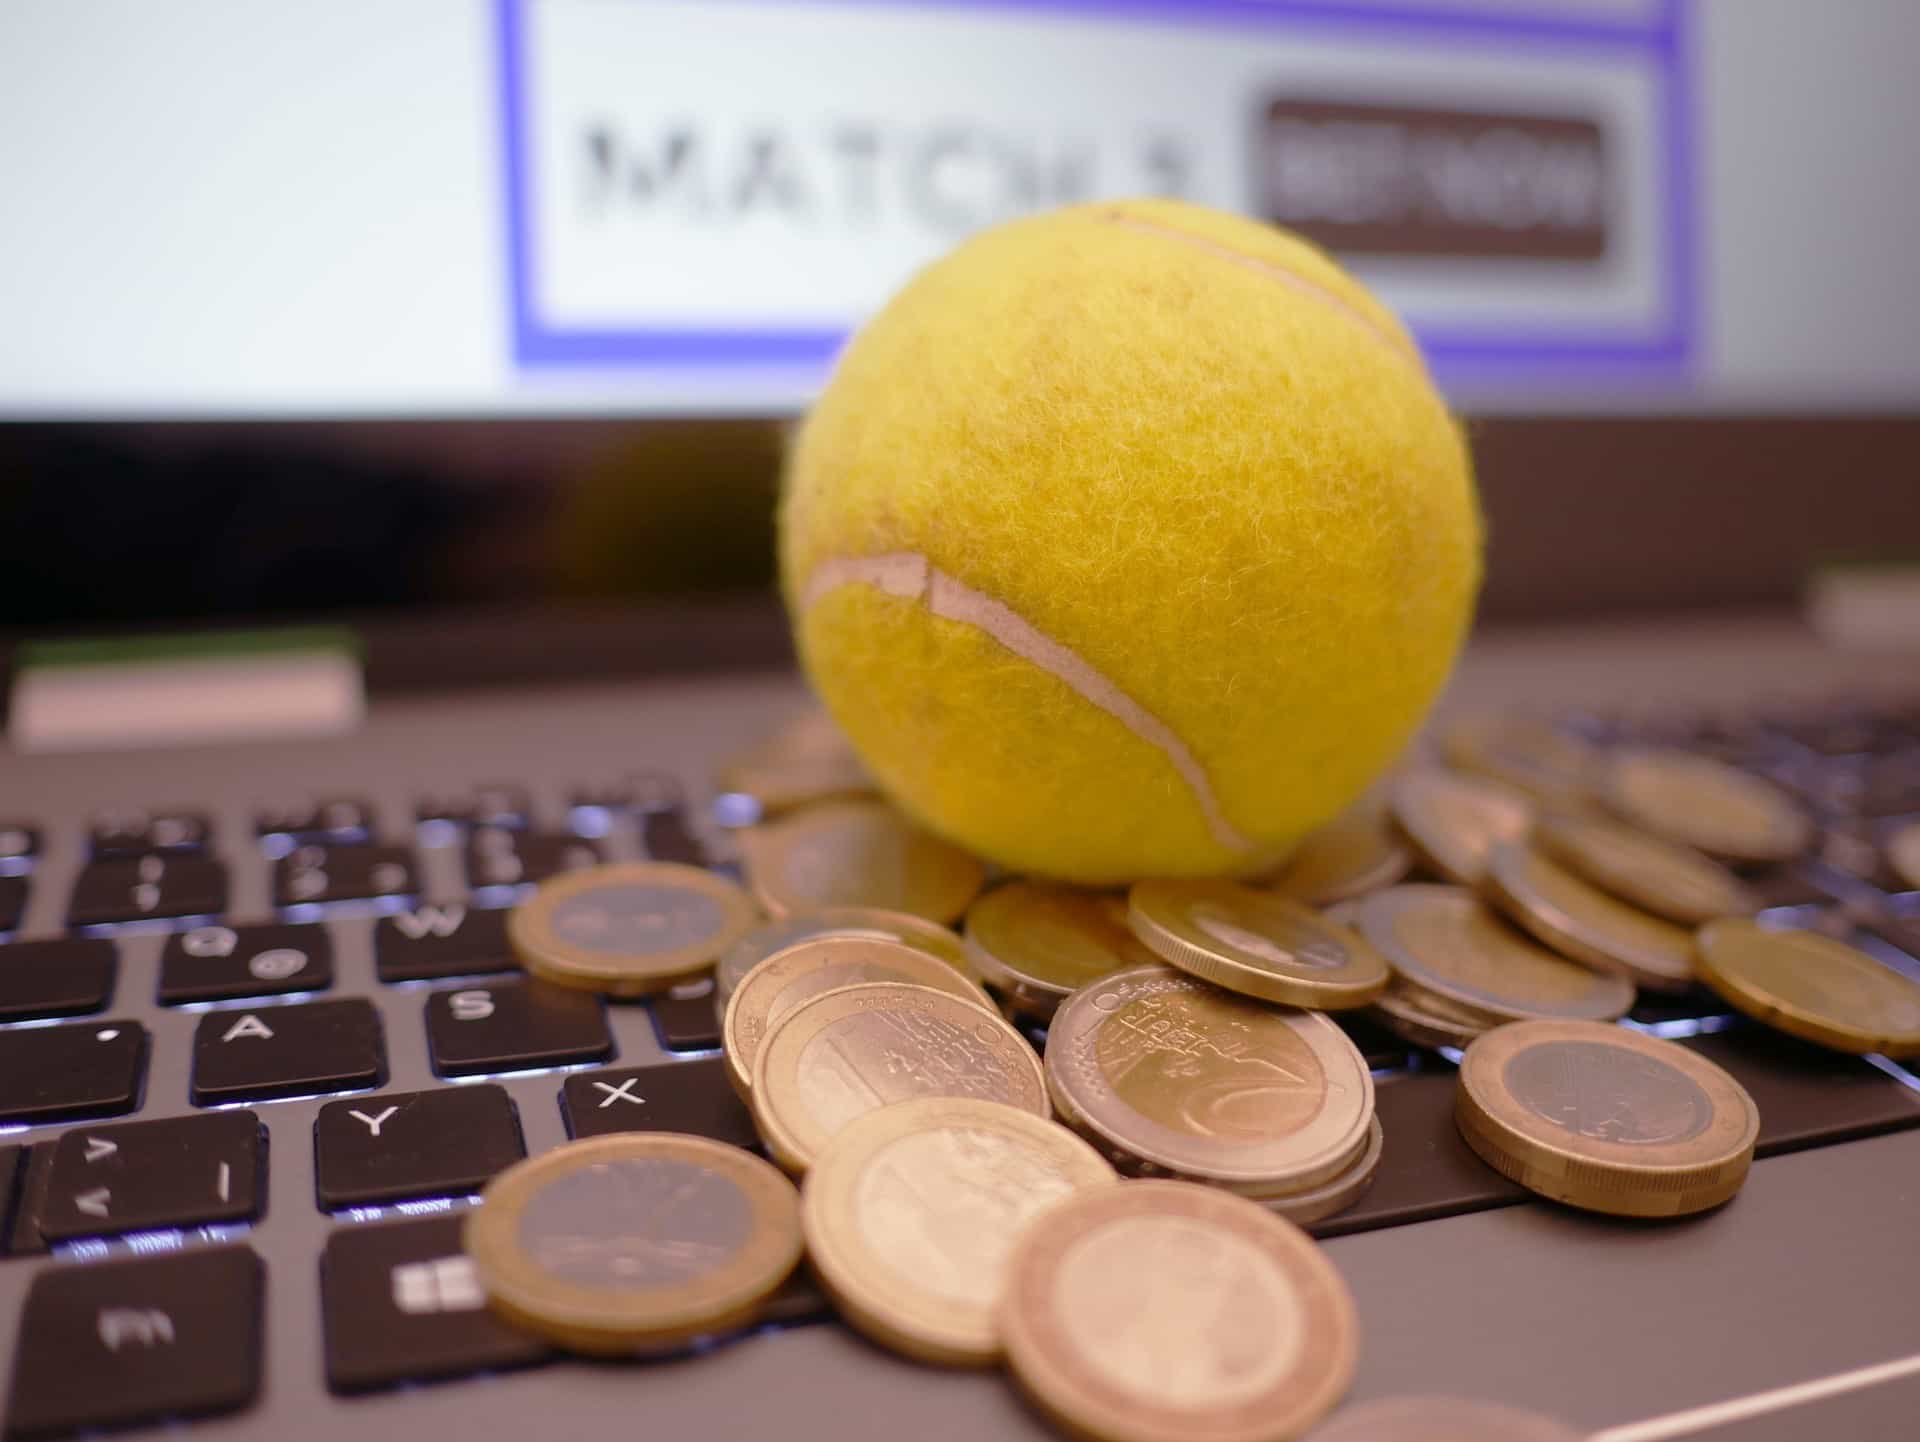 Auf einer Tastatur liegt ein gelber Tennisball und viele Münzen.